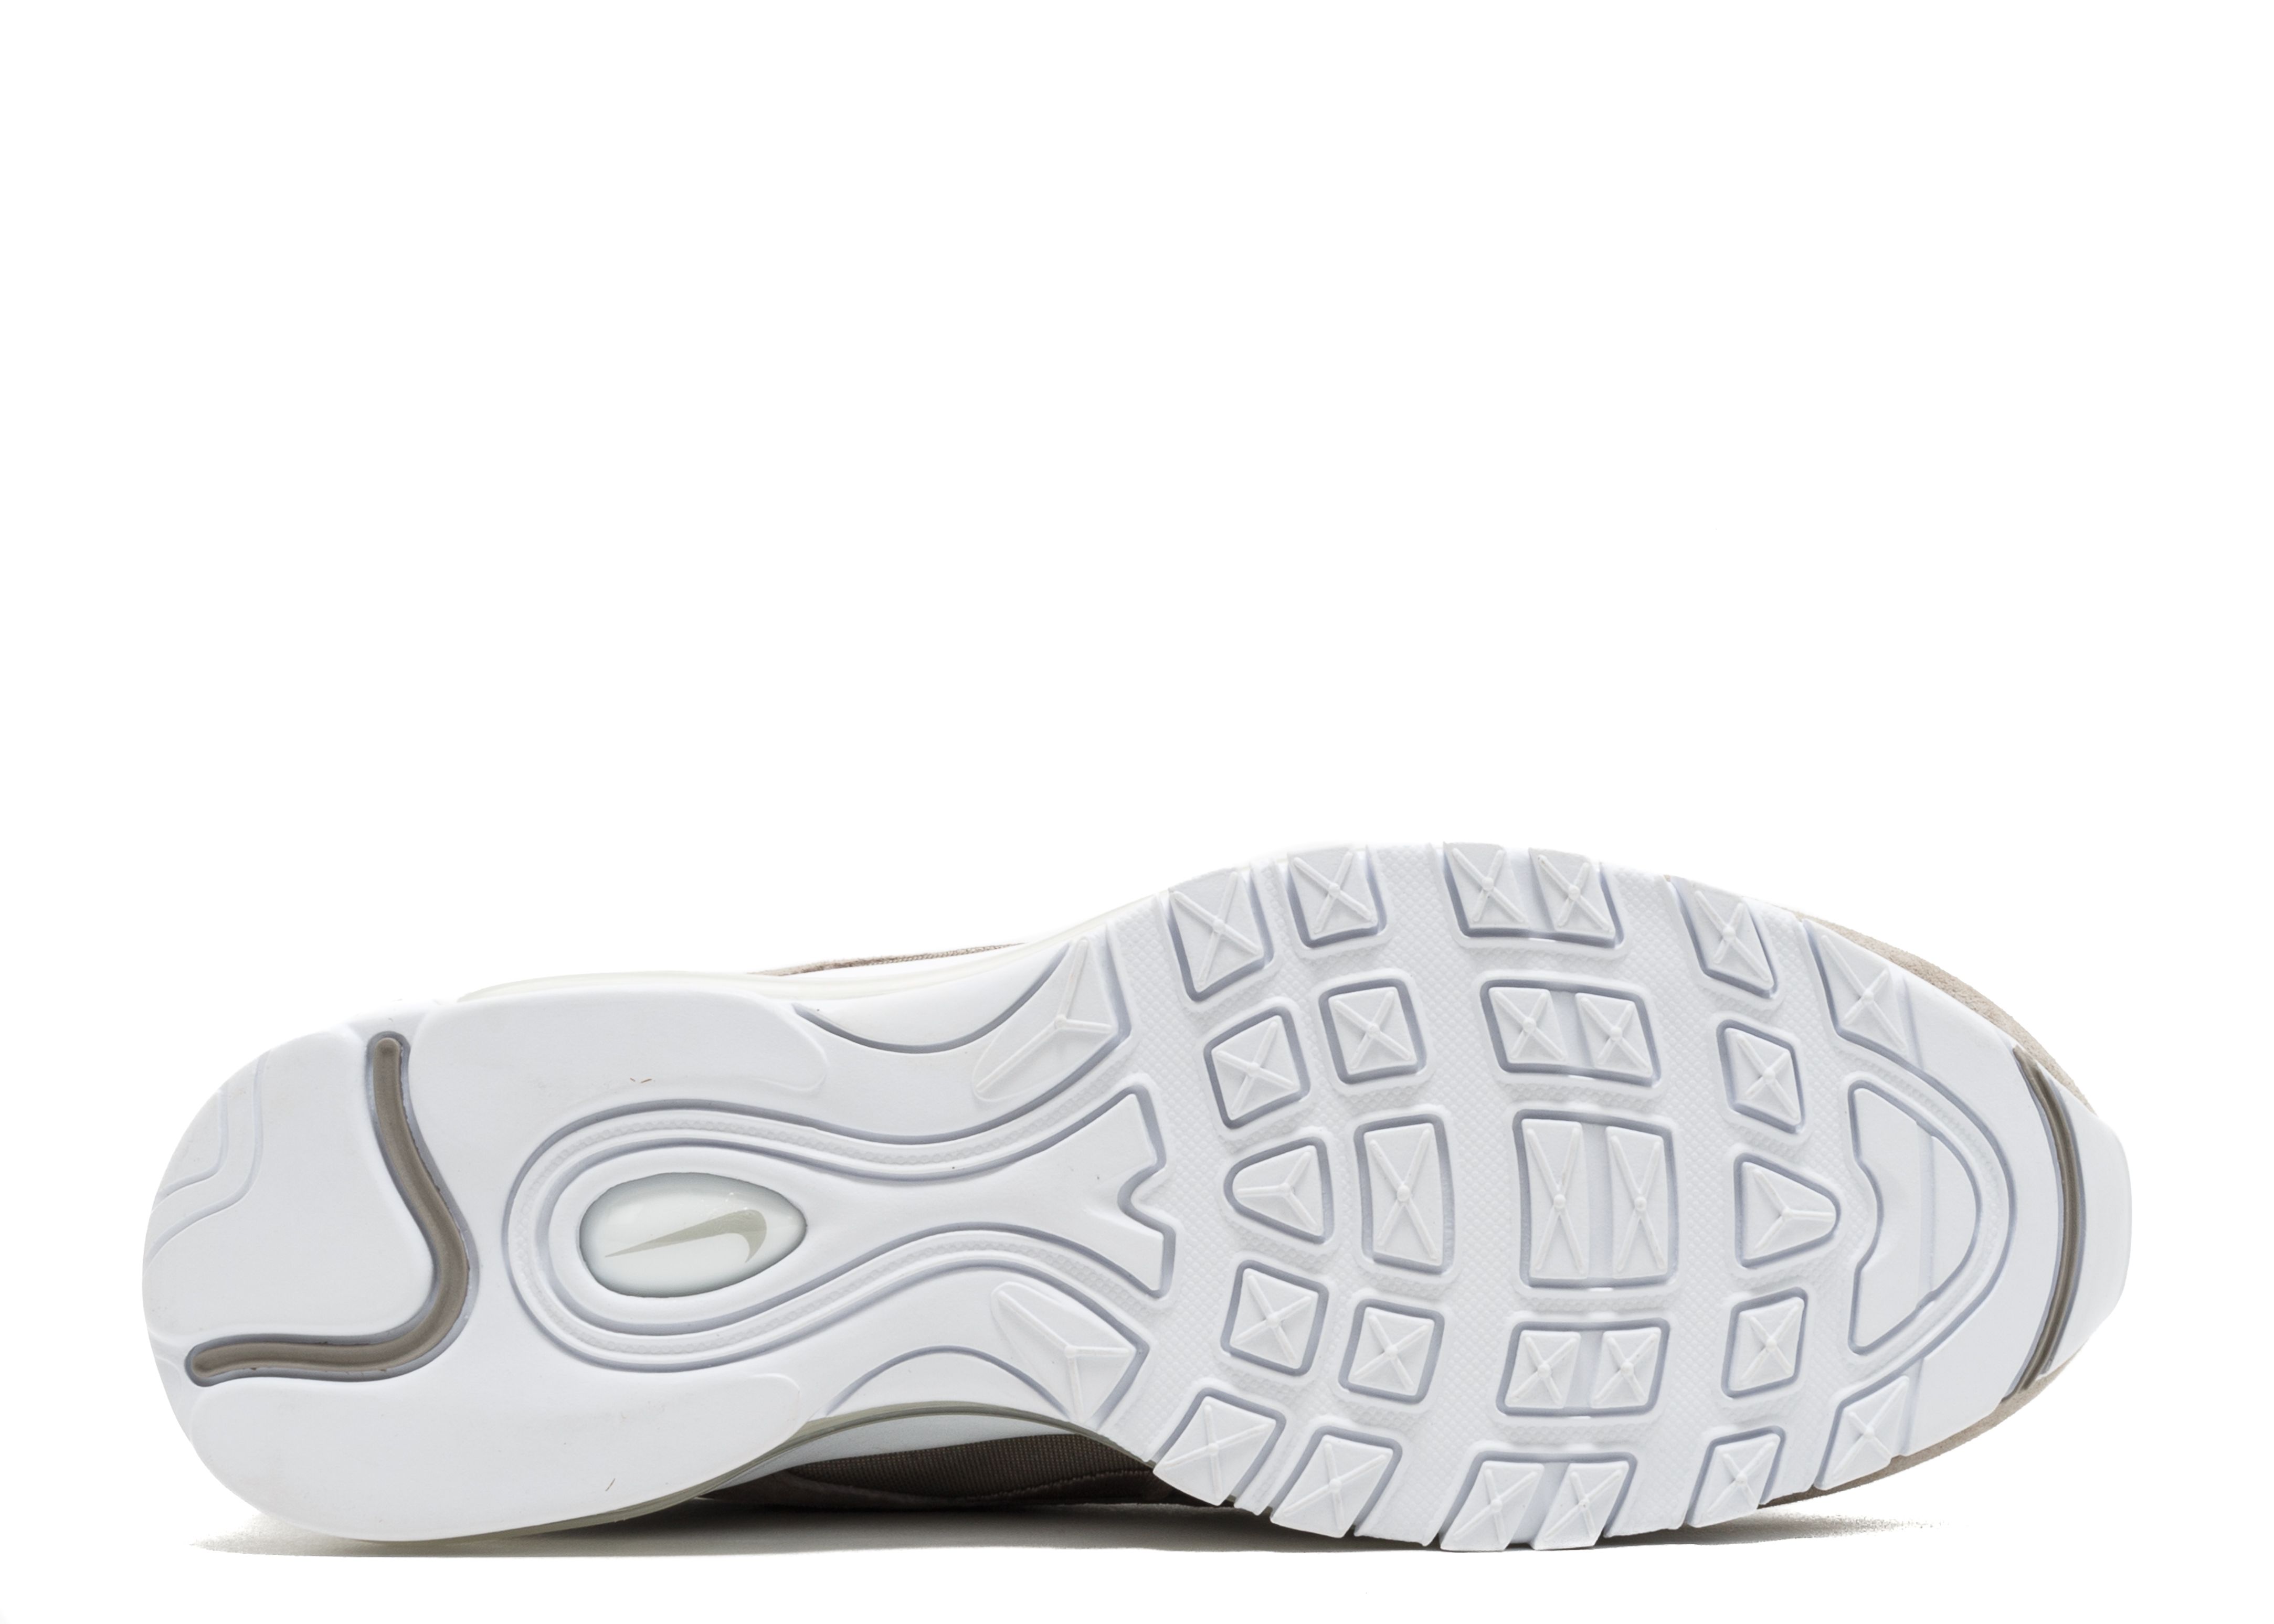 Air Max 97 'Cobblestone' - Nike - 921826 002 - cobblestone